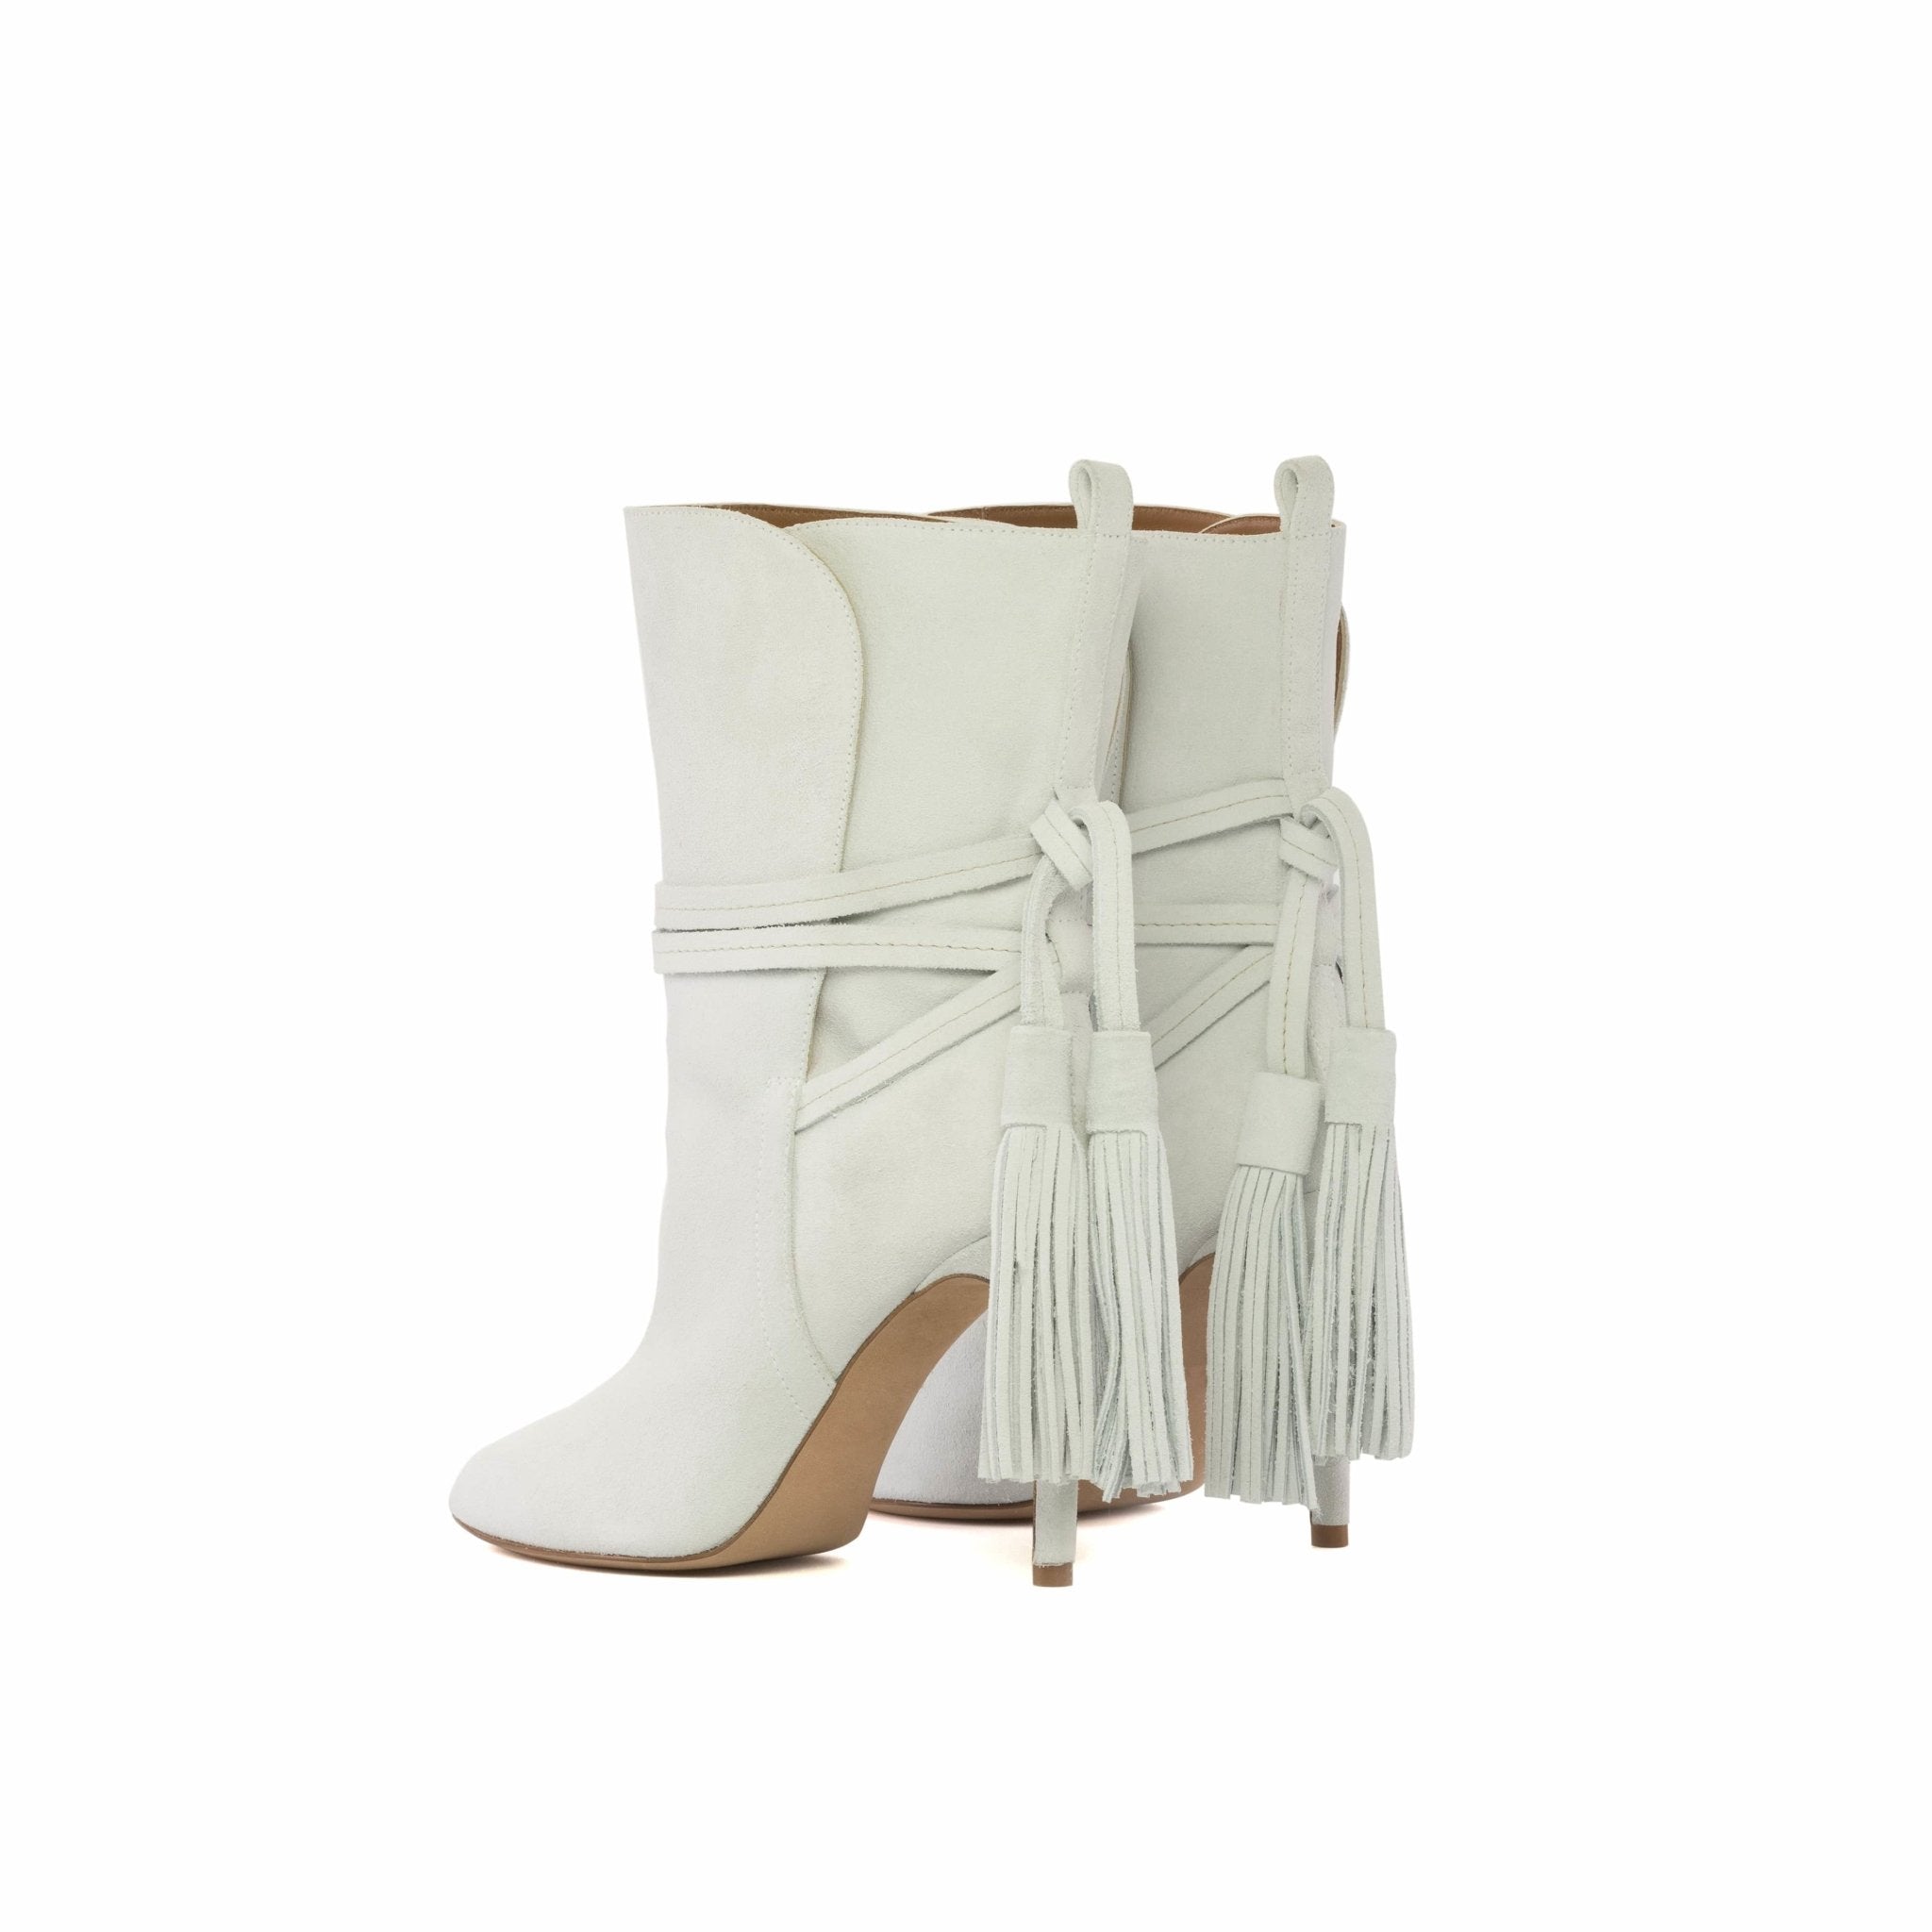 Cartagena Boots in White - Maison de Kingsley Couture Harmonie et Fureur Spain